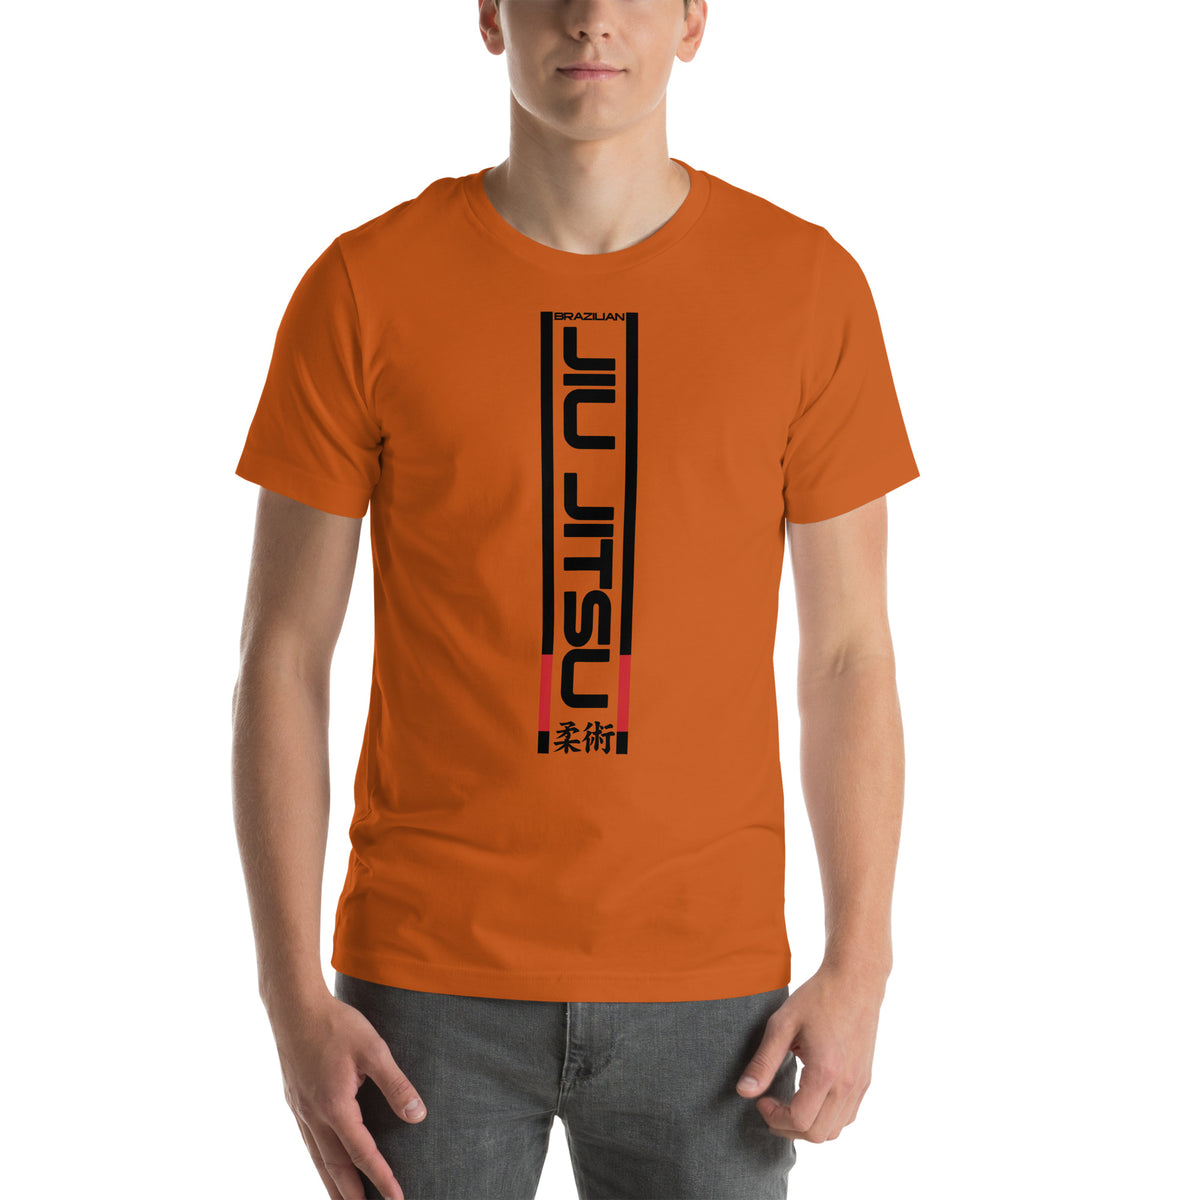 Brazilian Jiu Jitsu Unisex Staple T-Shirt